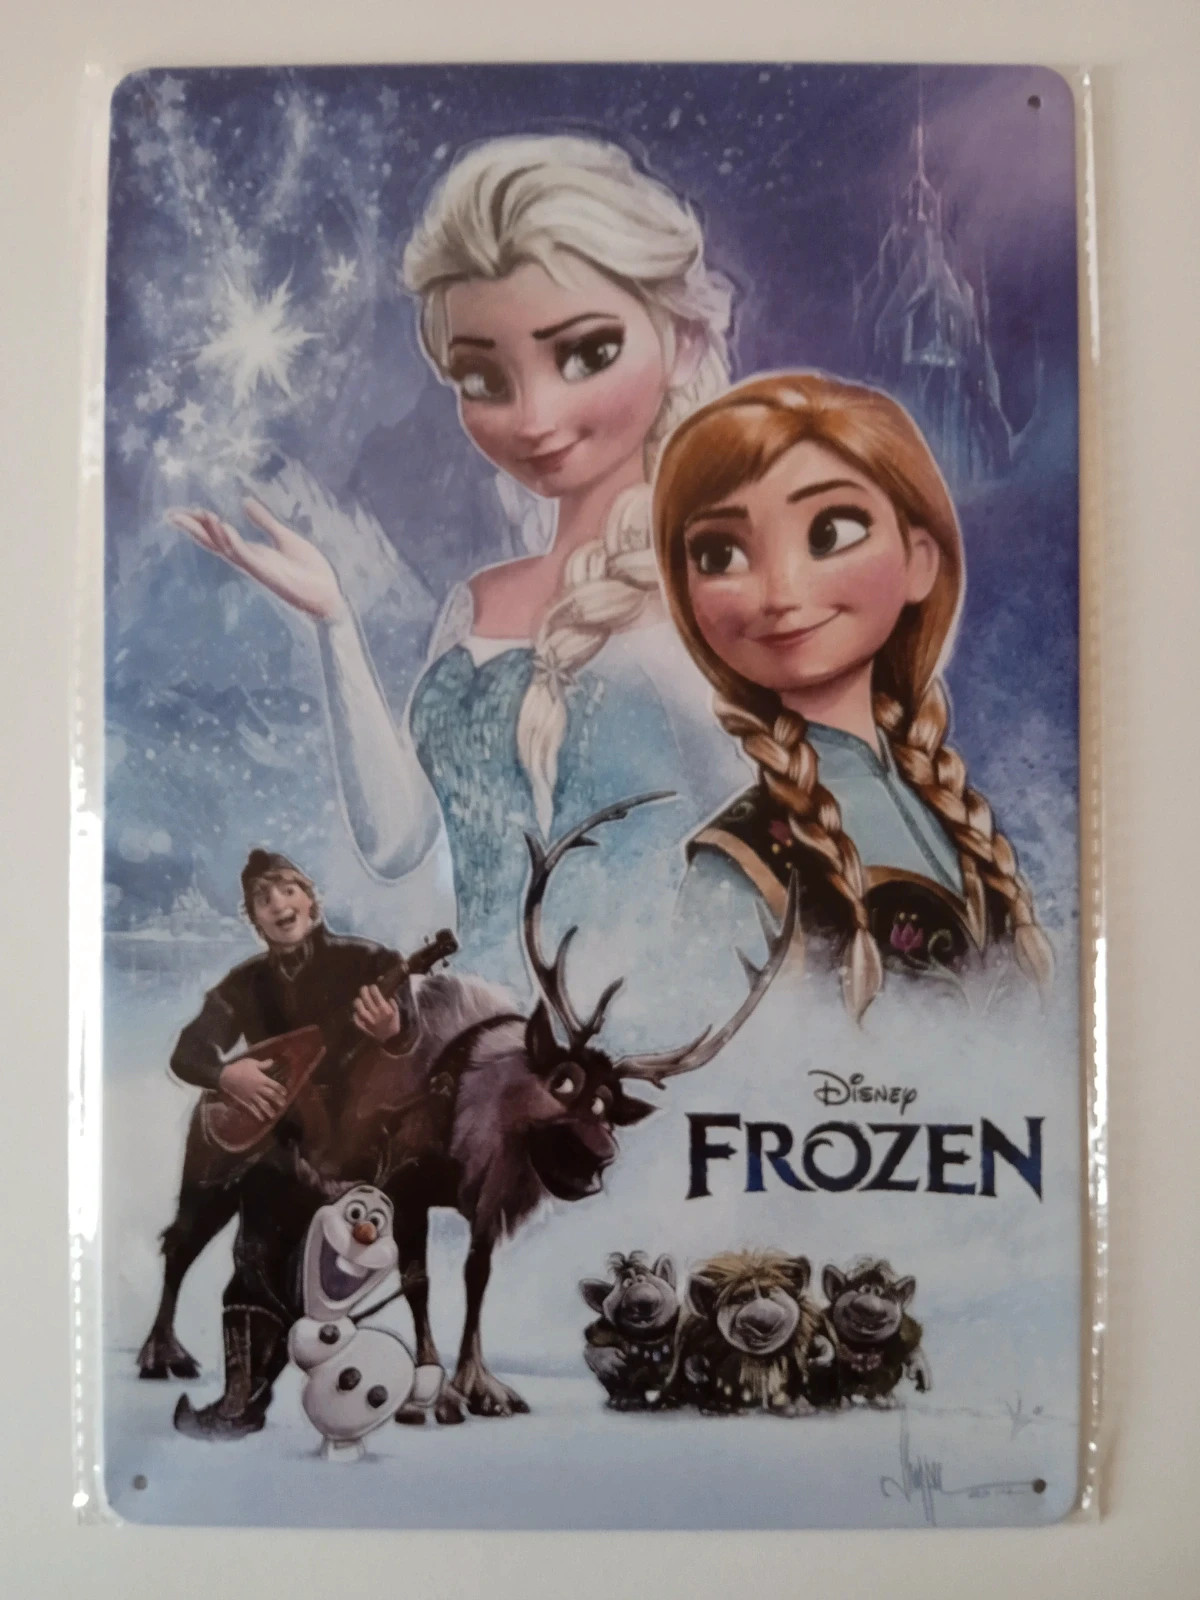 Disney Bolsa de Natación para Niños Frozen El Reino del Hielo